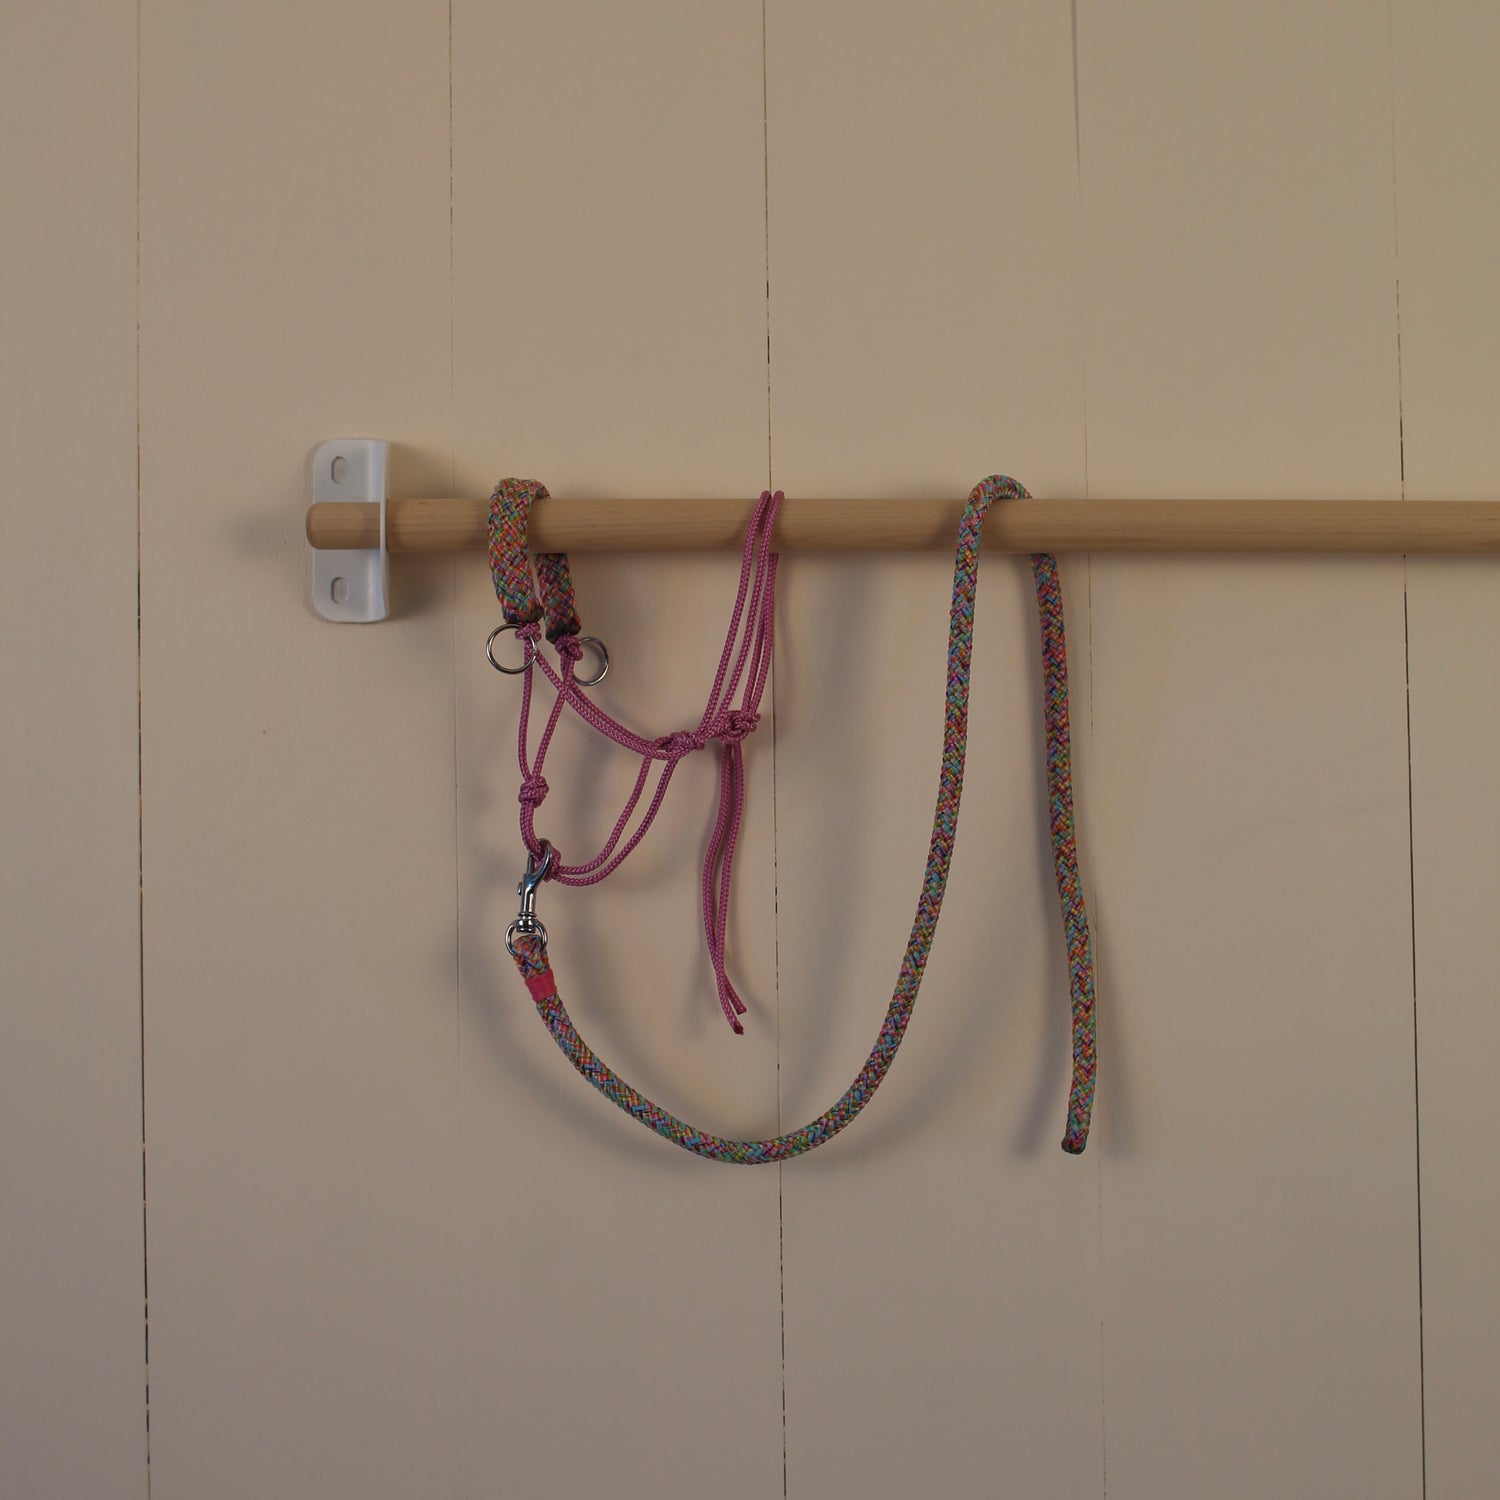 Halster met touw multi-colour roze / paars / geel / lila